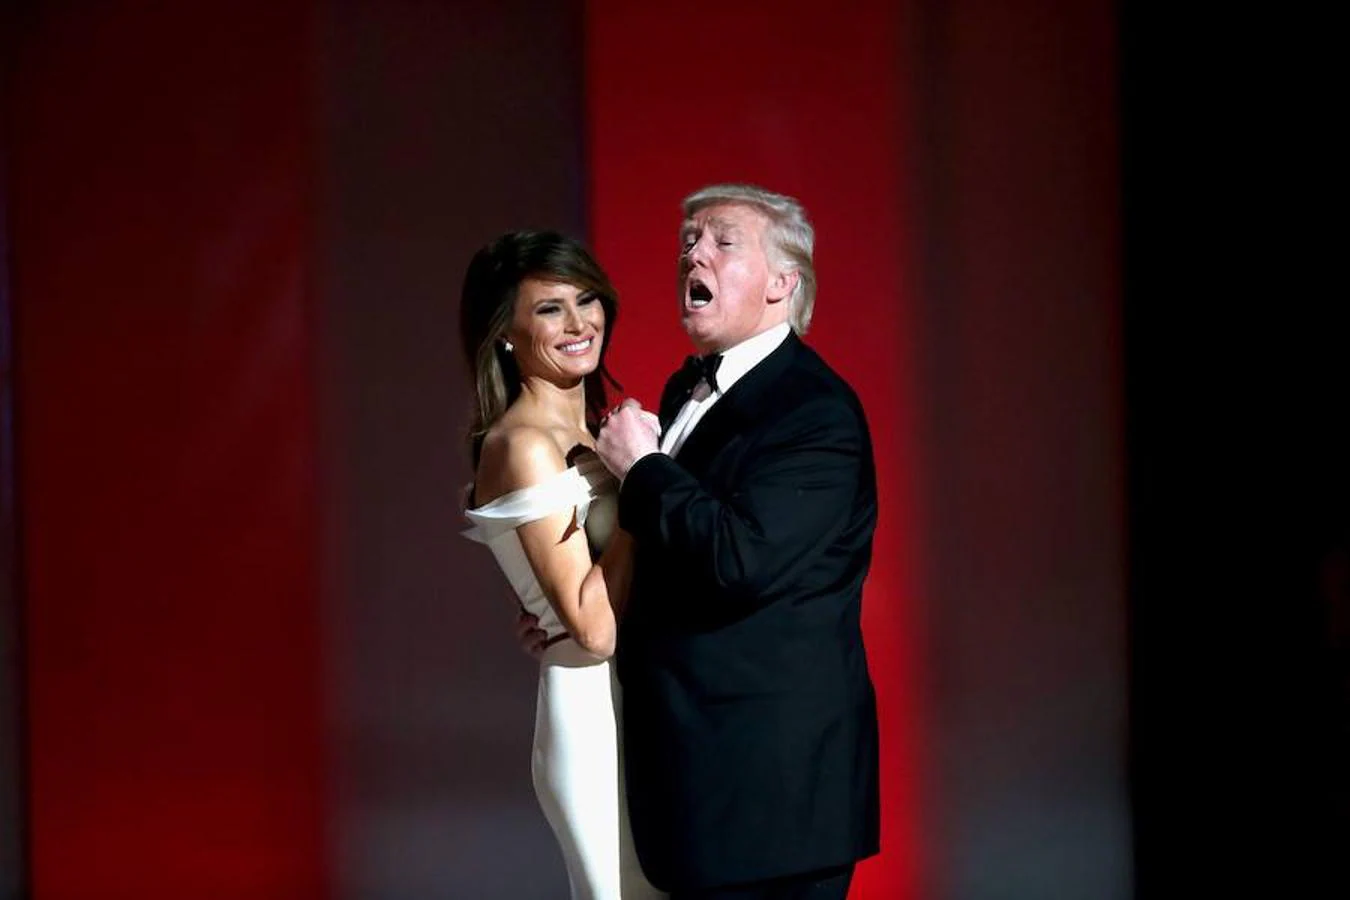 El matrimonio Trump bailando «My Way».